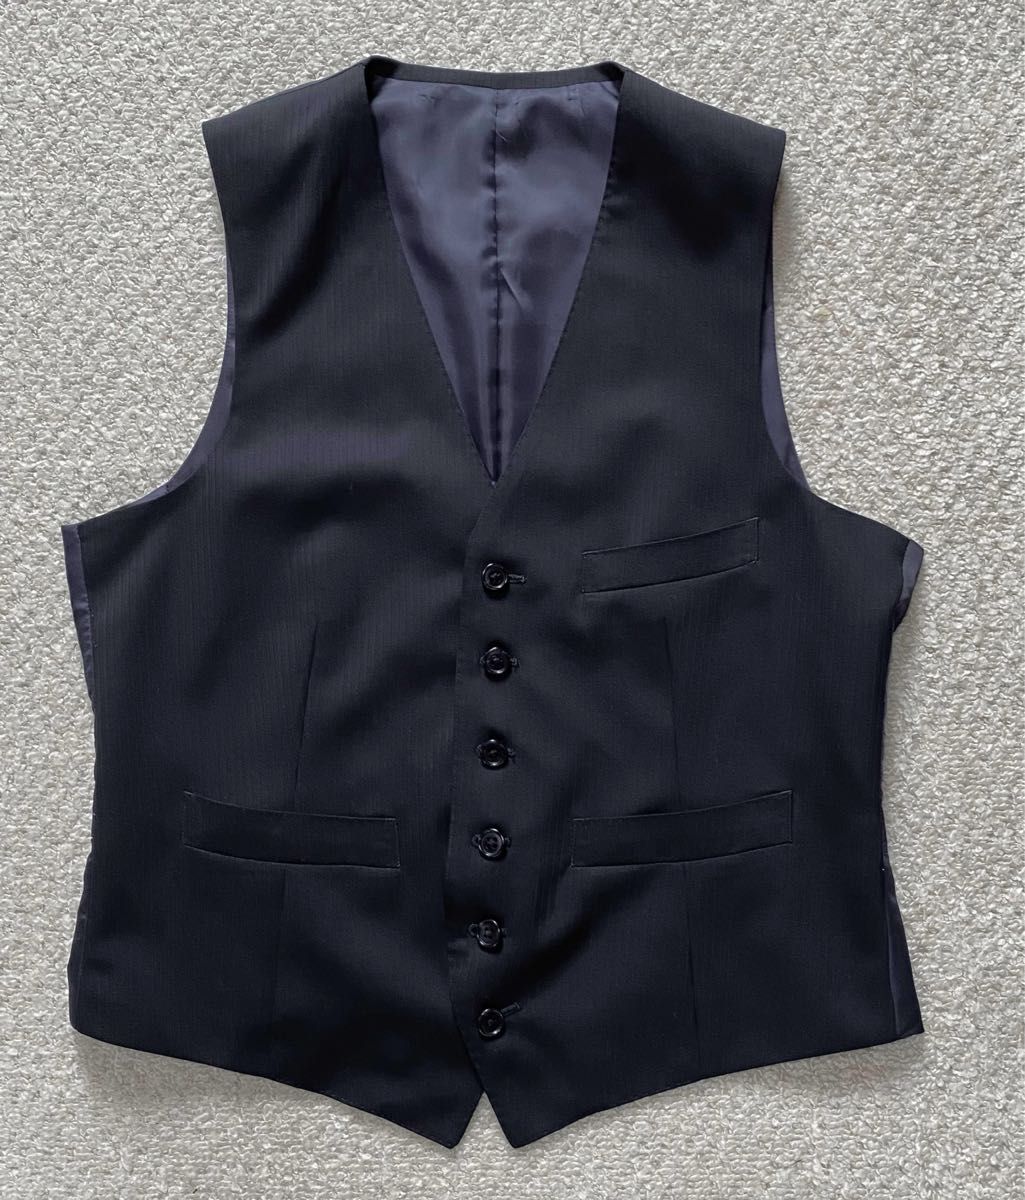 THE SUIT COMPANYメンズスリーピース 濃紺 M メンズフォーマル 入学式 入社式 ビジネススーツ スーツ